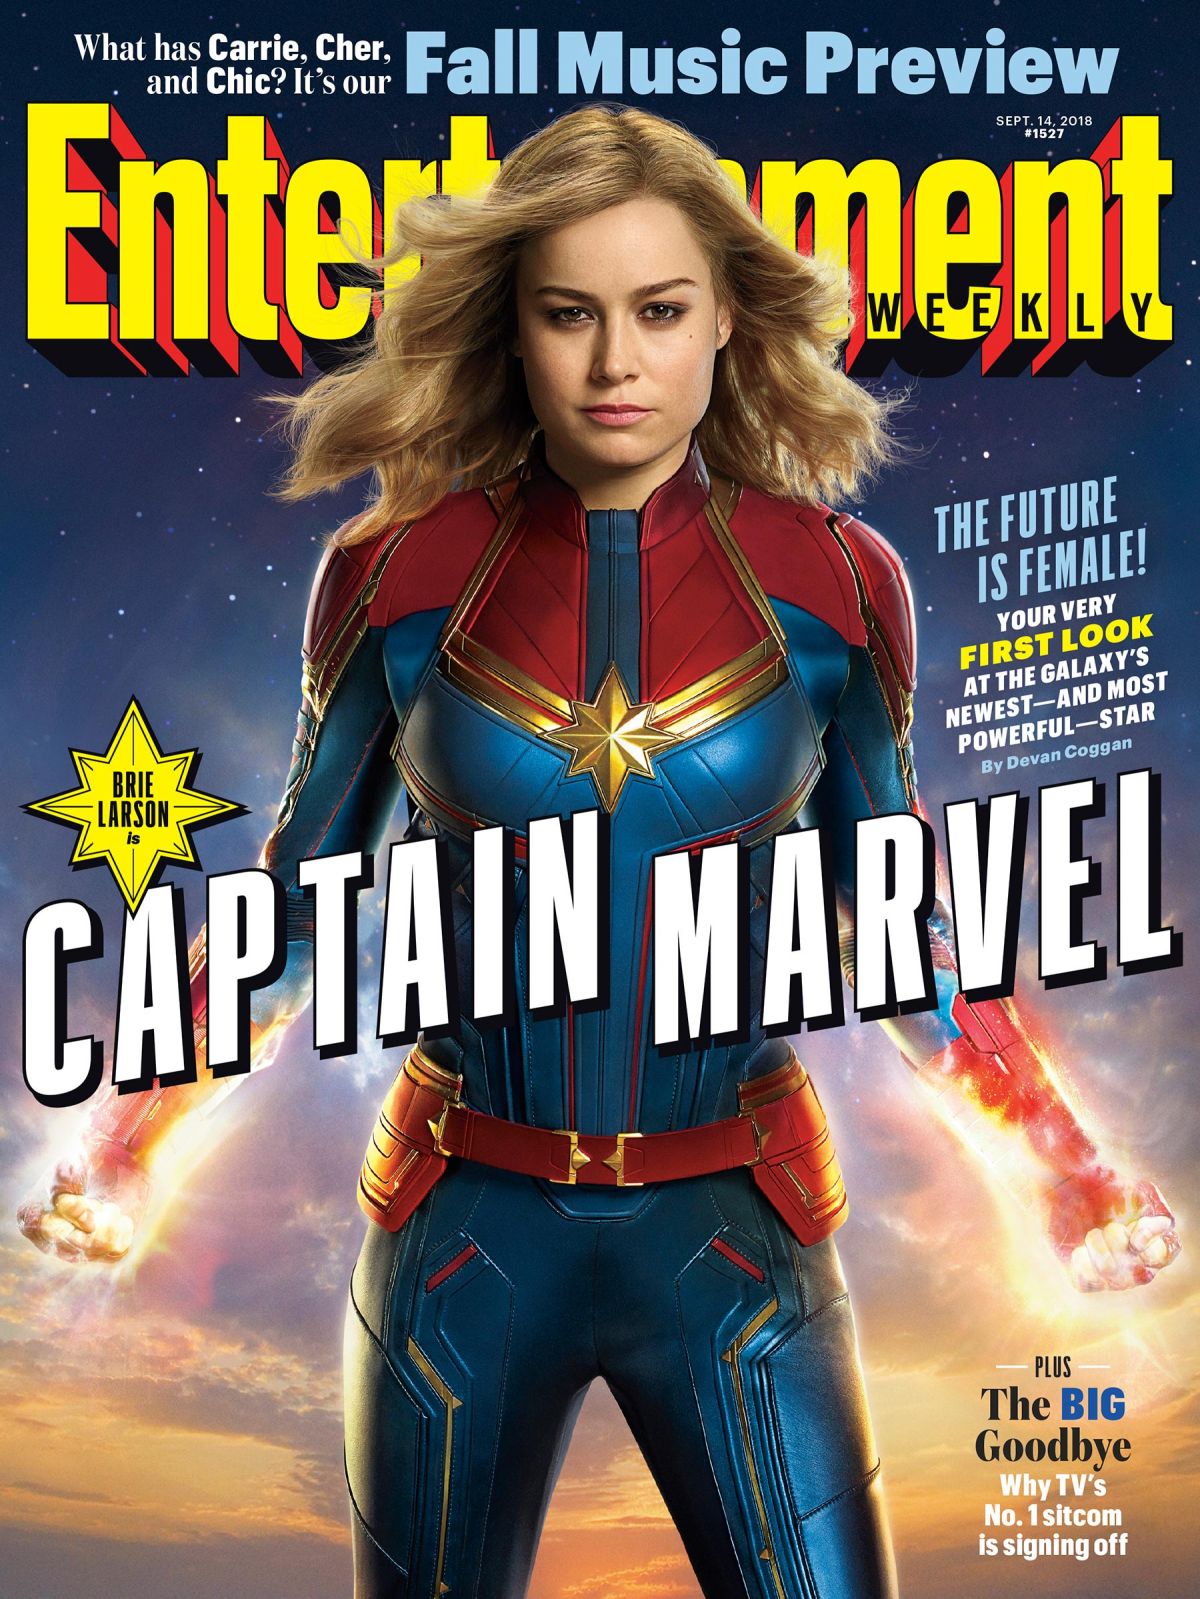 Captain Marvel 2019 4K Wallpapers